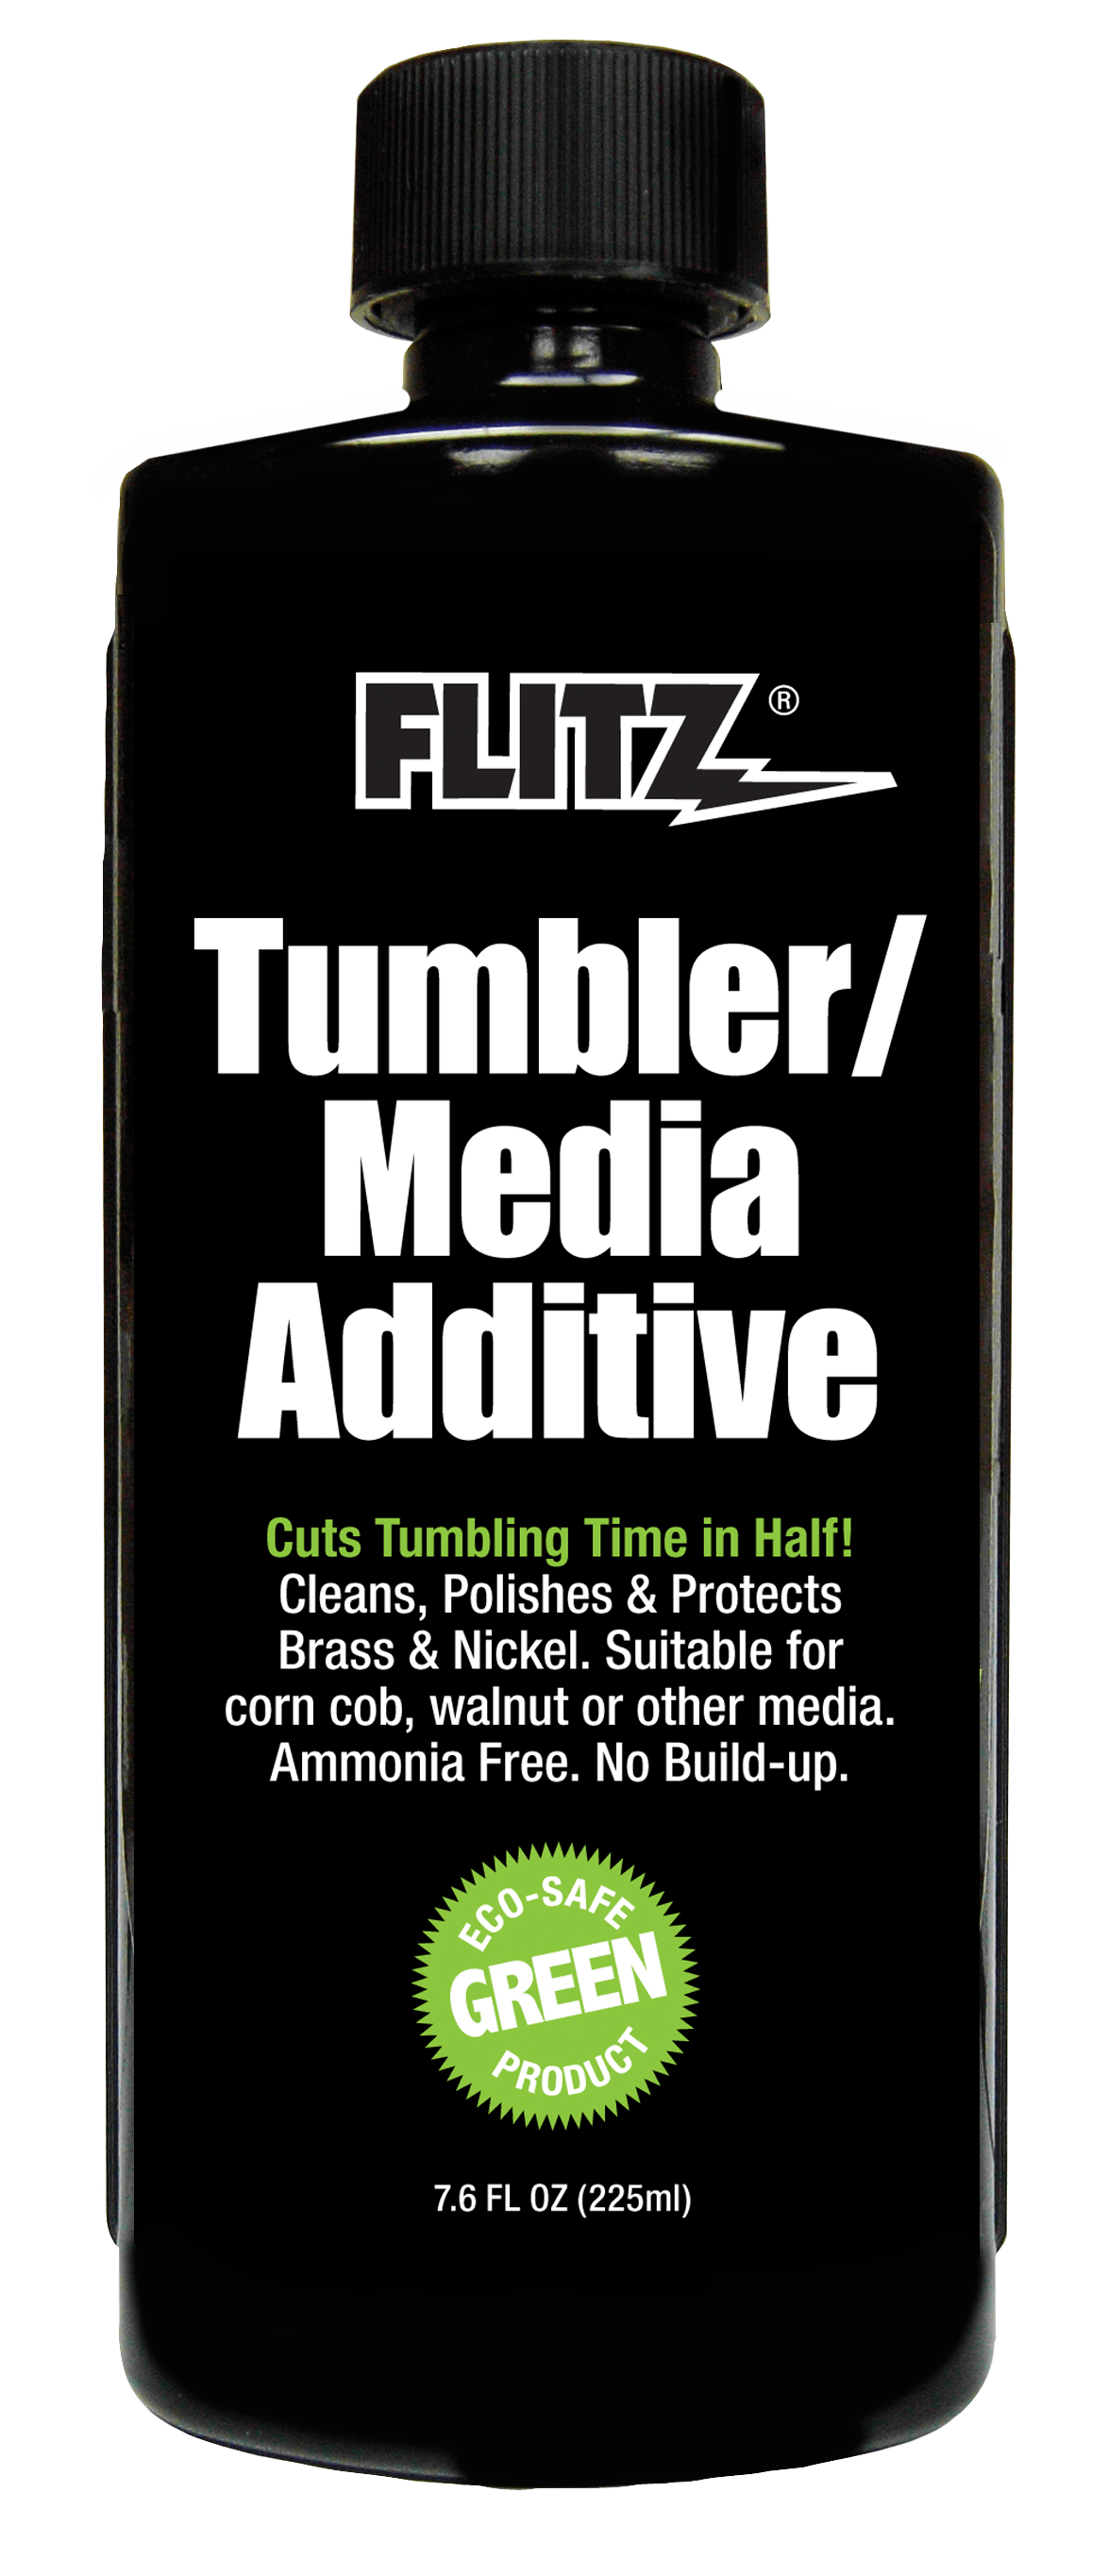 Flitz Flitz Tumbler/Media Additive - 7.6 oz. Bottle Hunting & Fishing